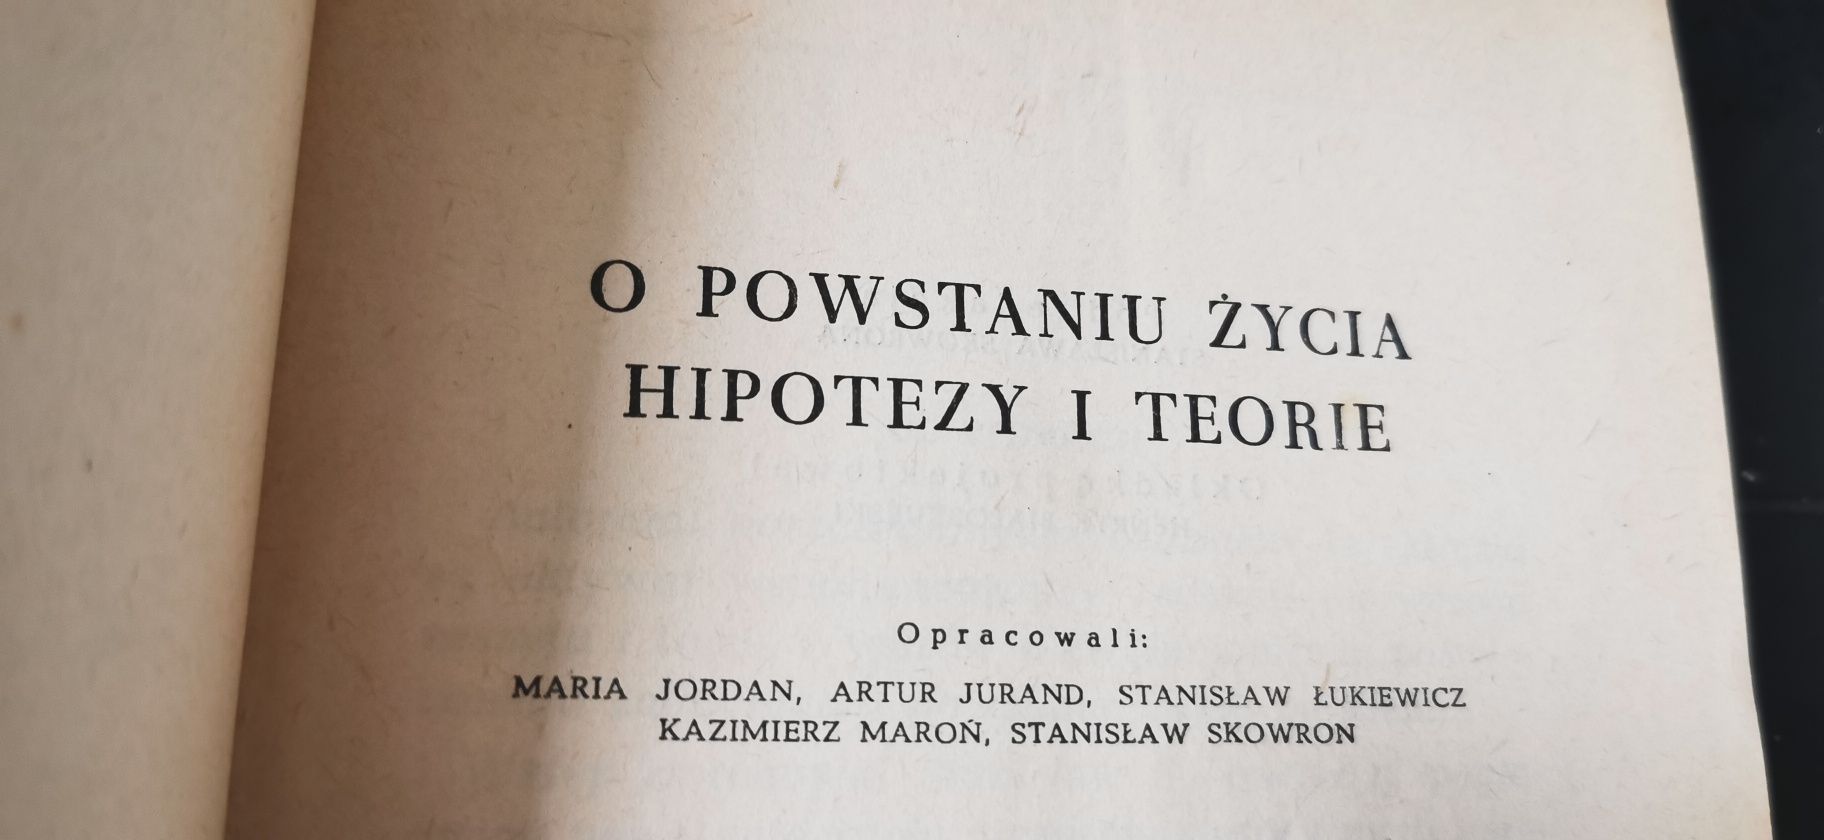 O powstaniu życia hipotezy i teorie 1957
Maria Jordan, Stanisław Teofi